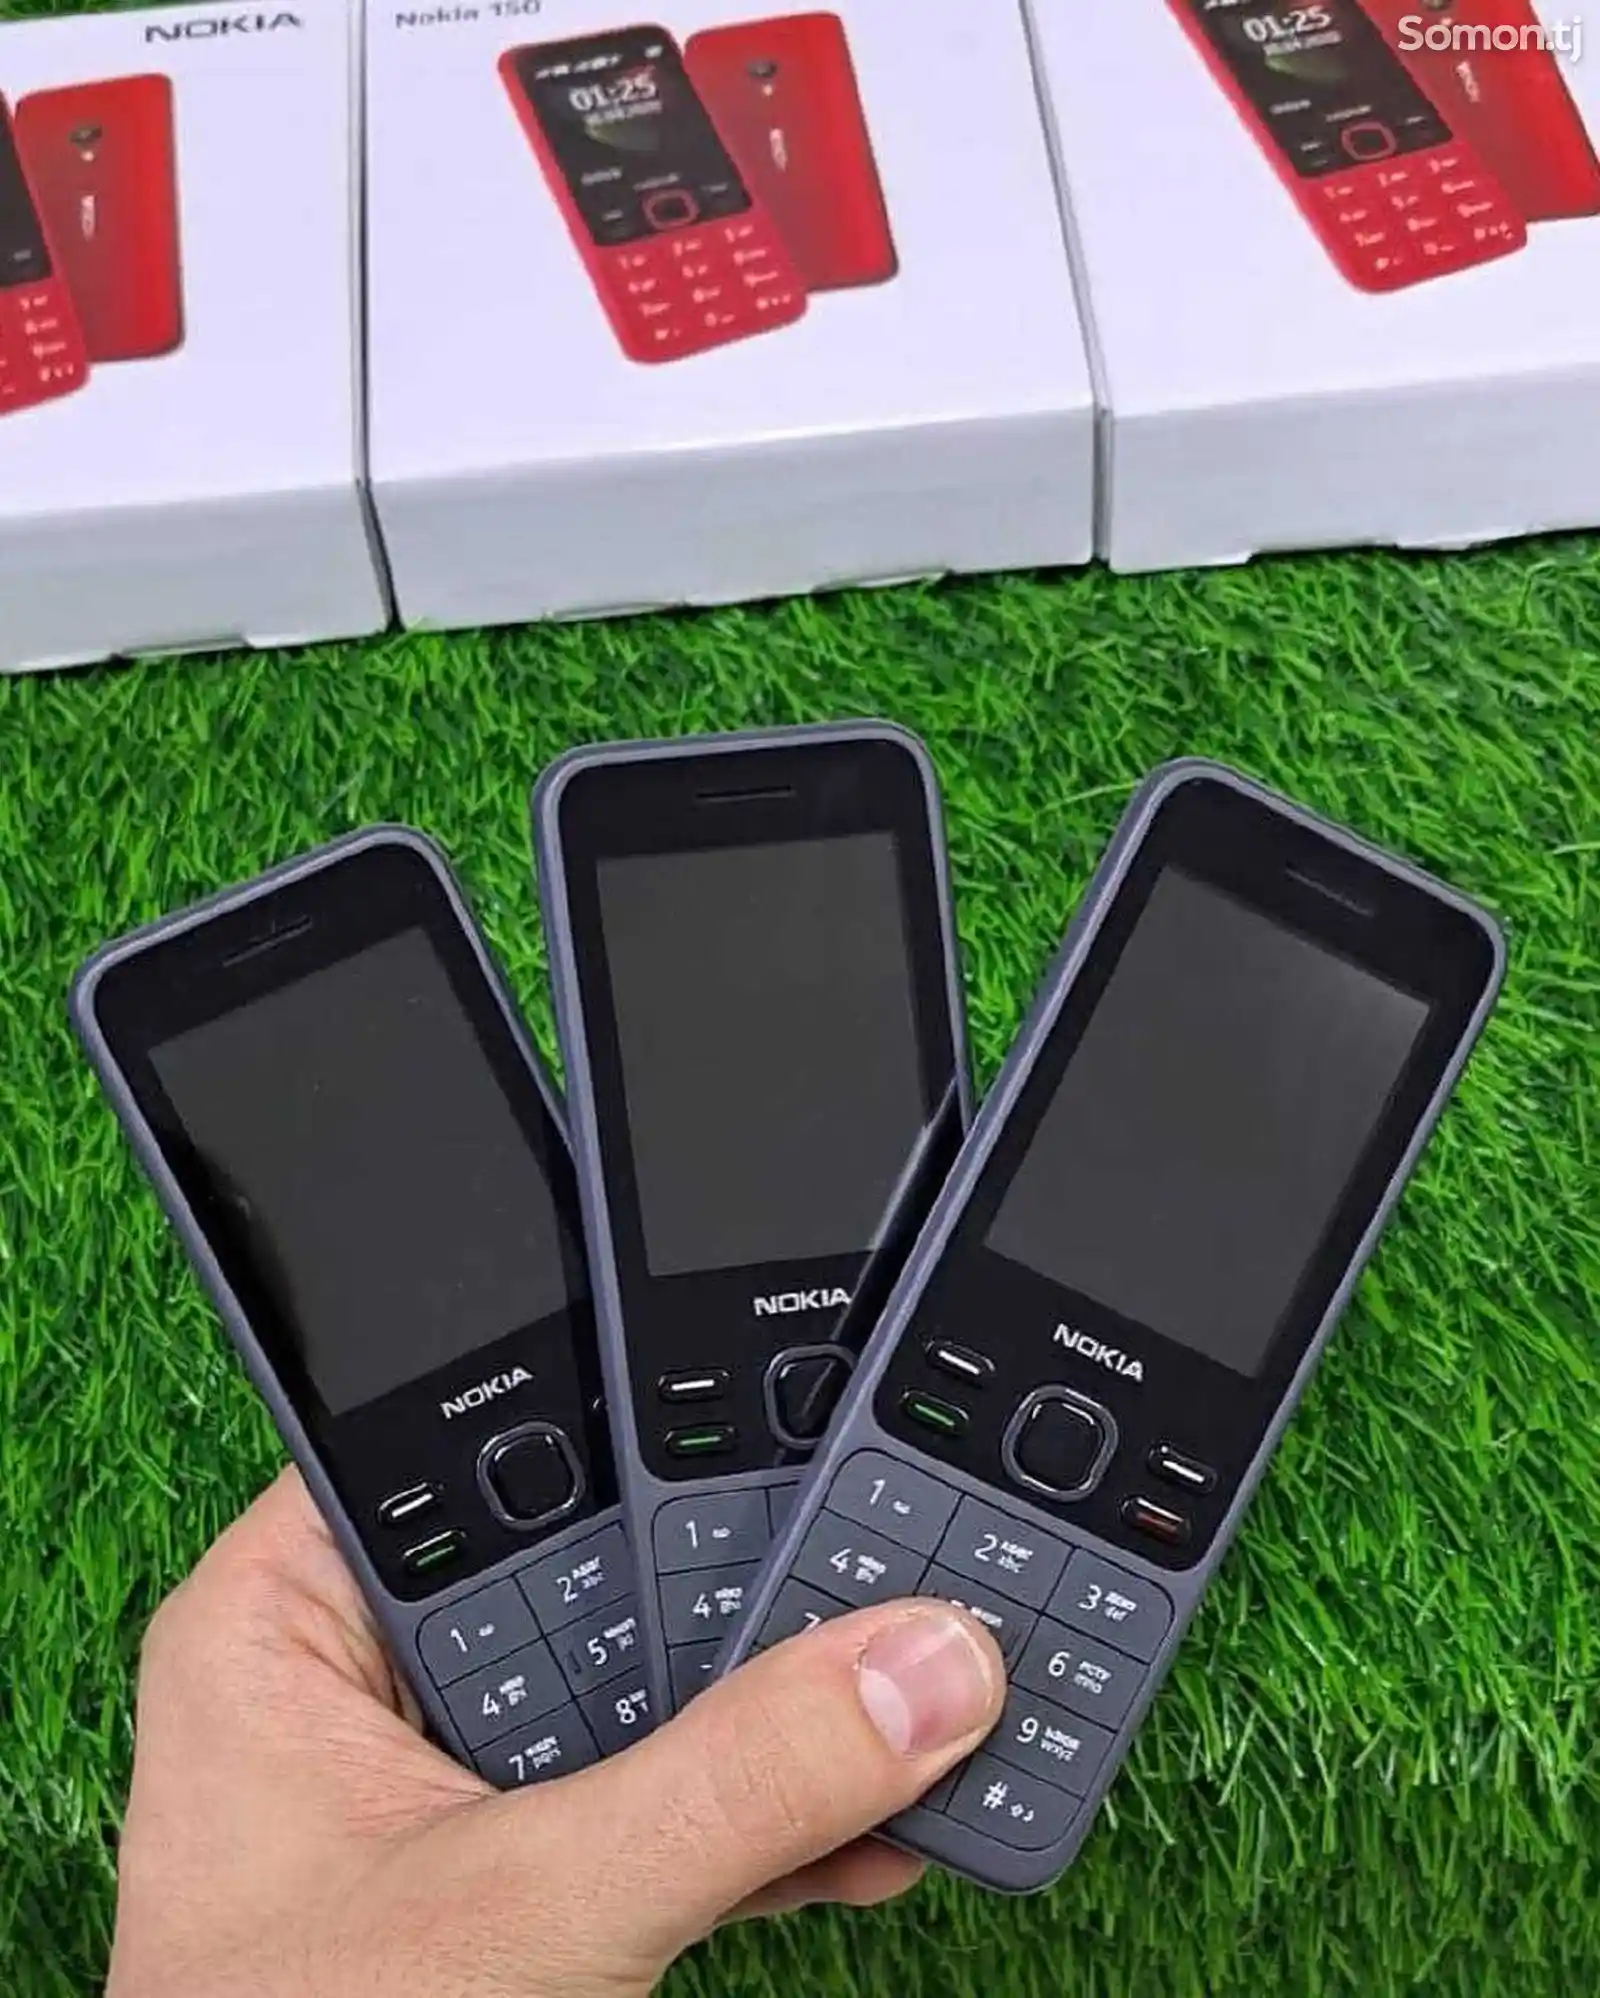 Nokia 150-2